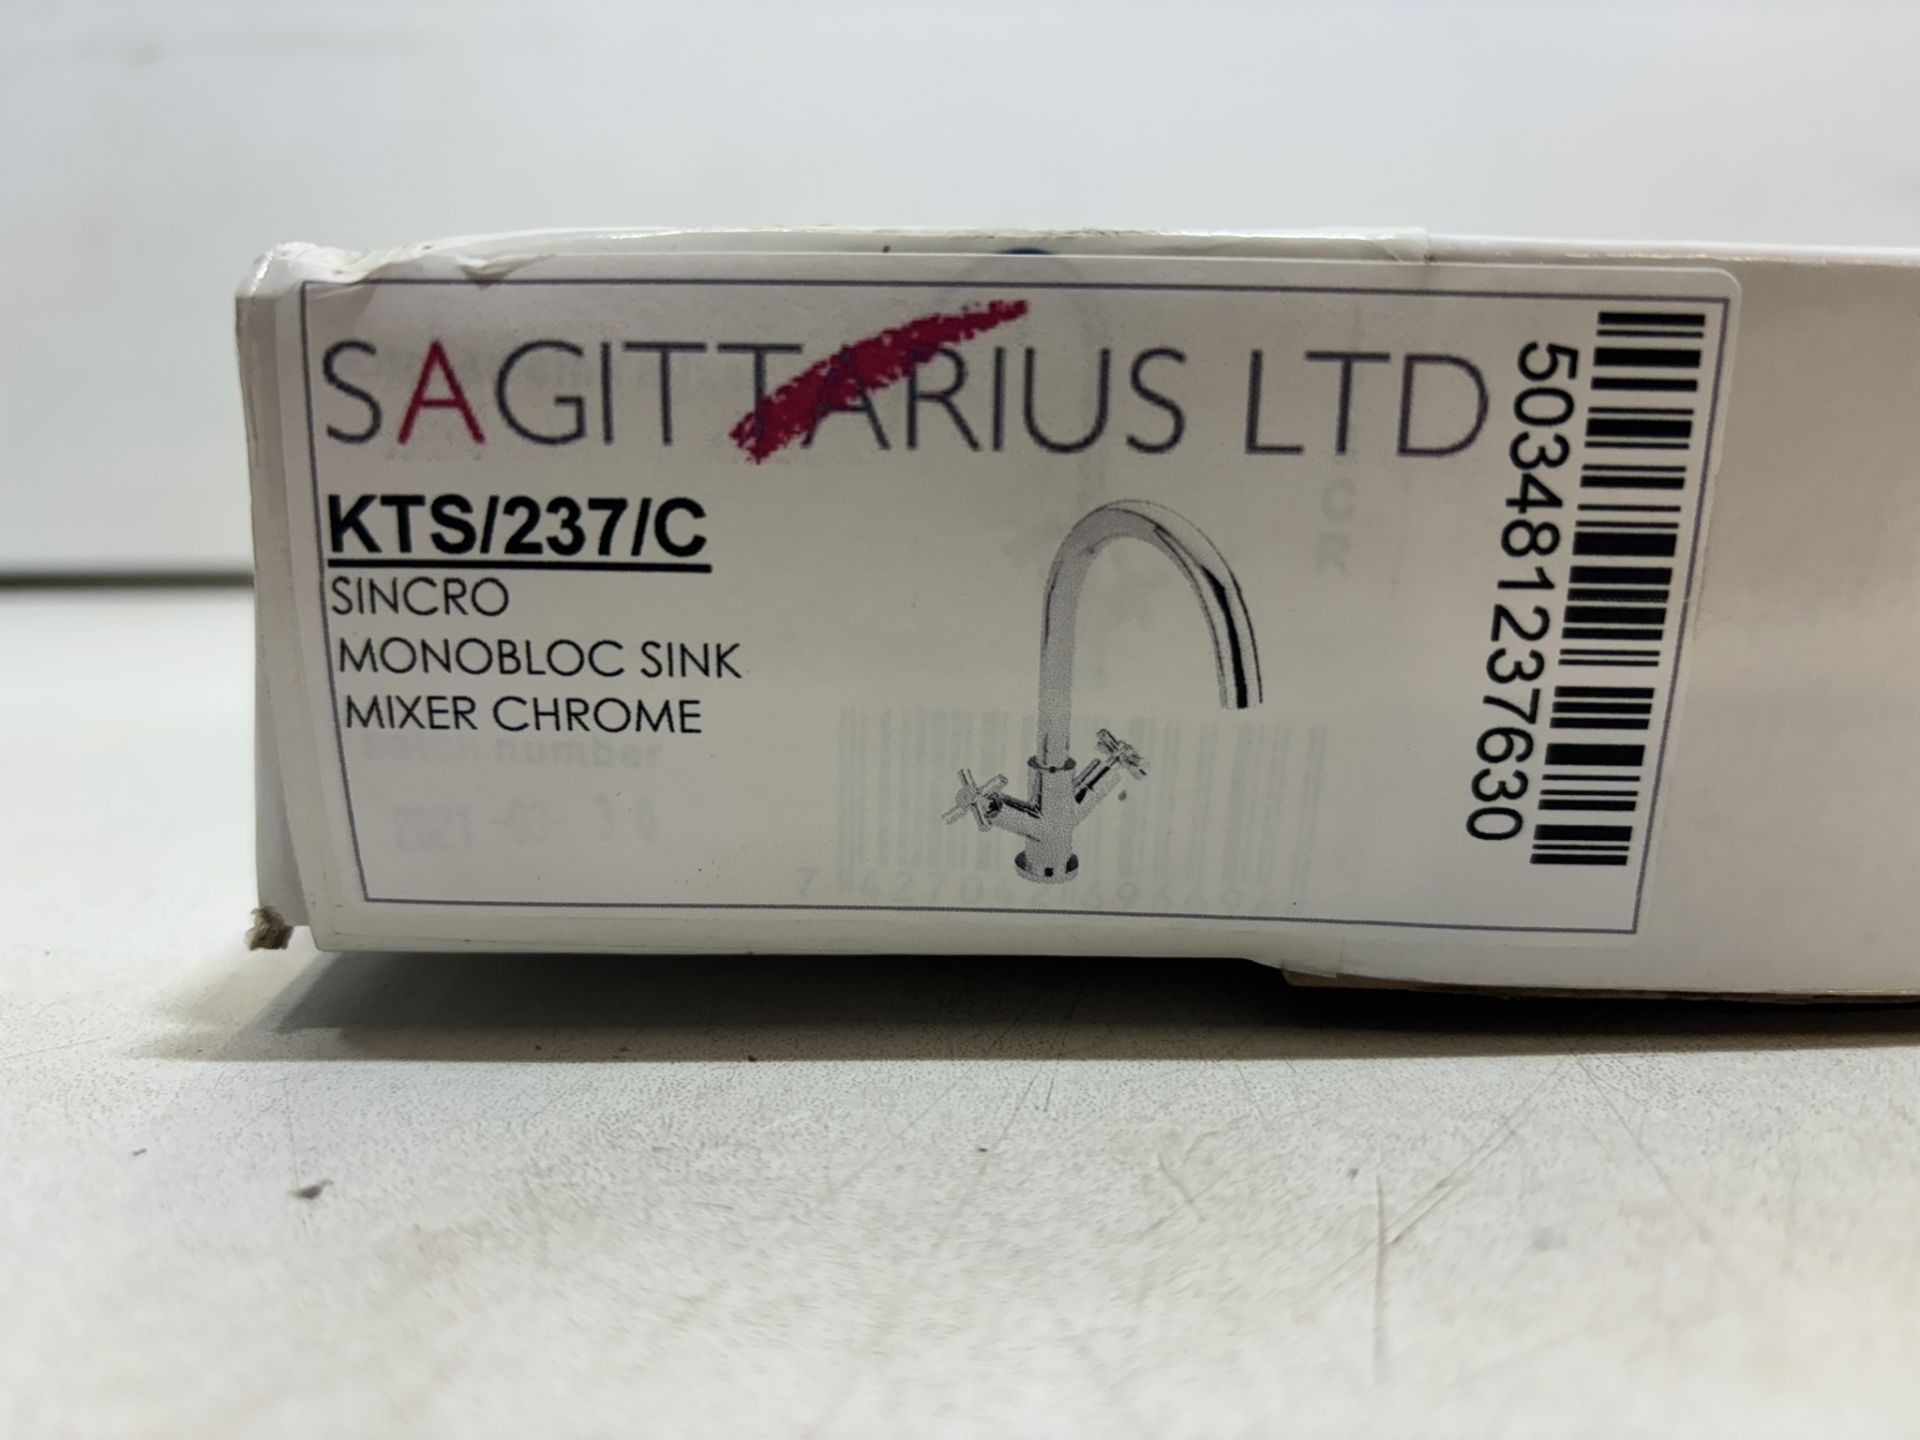 Sagittarius Ltd KTS/237/C Sincro Monobloc Sink Mixer Chrome - Image 2 of 4